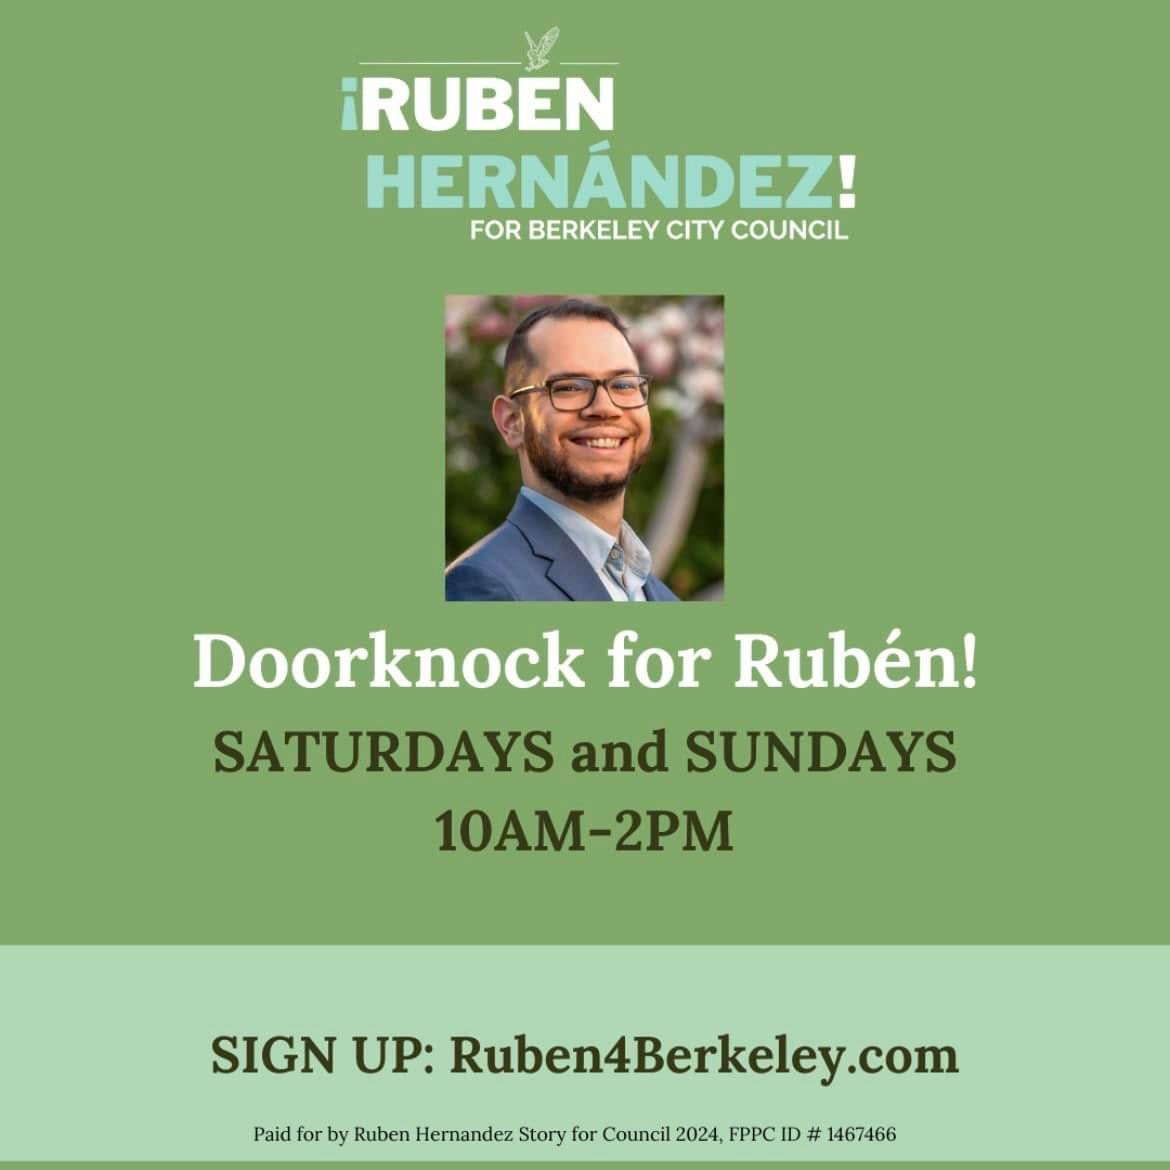 Knock Doors with Rubén!